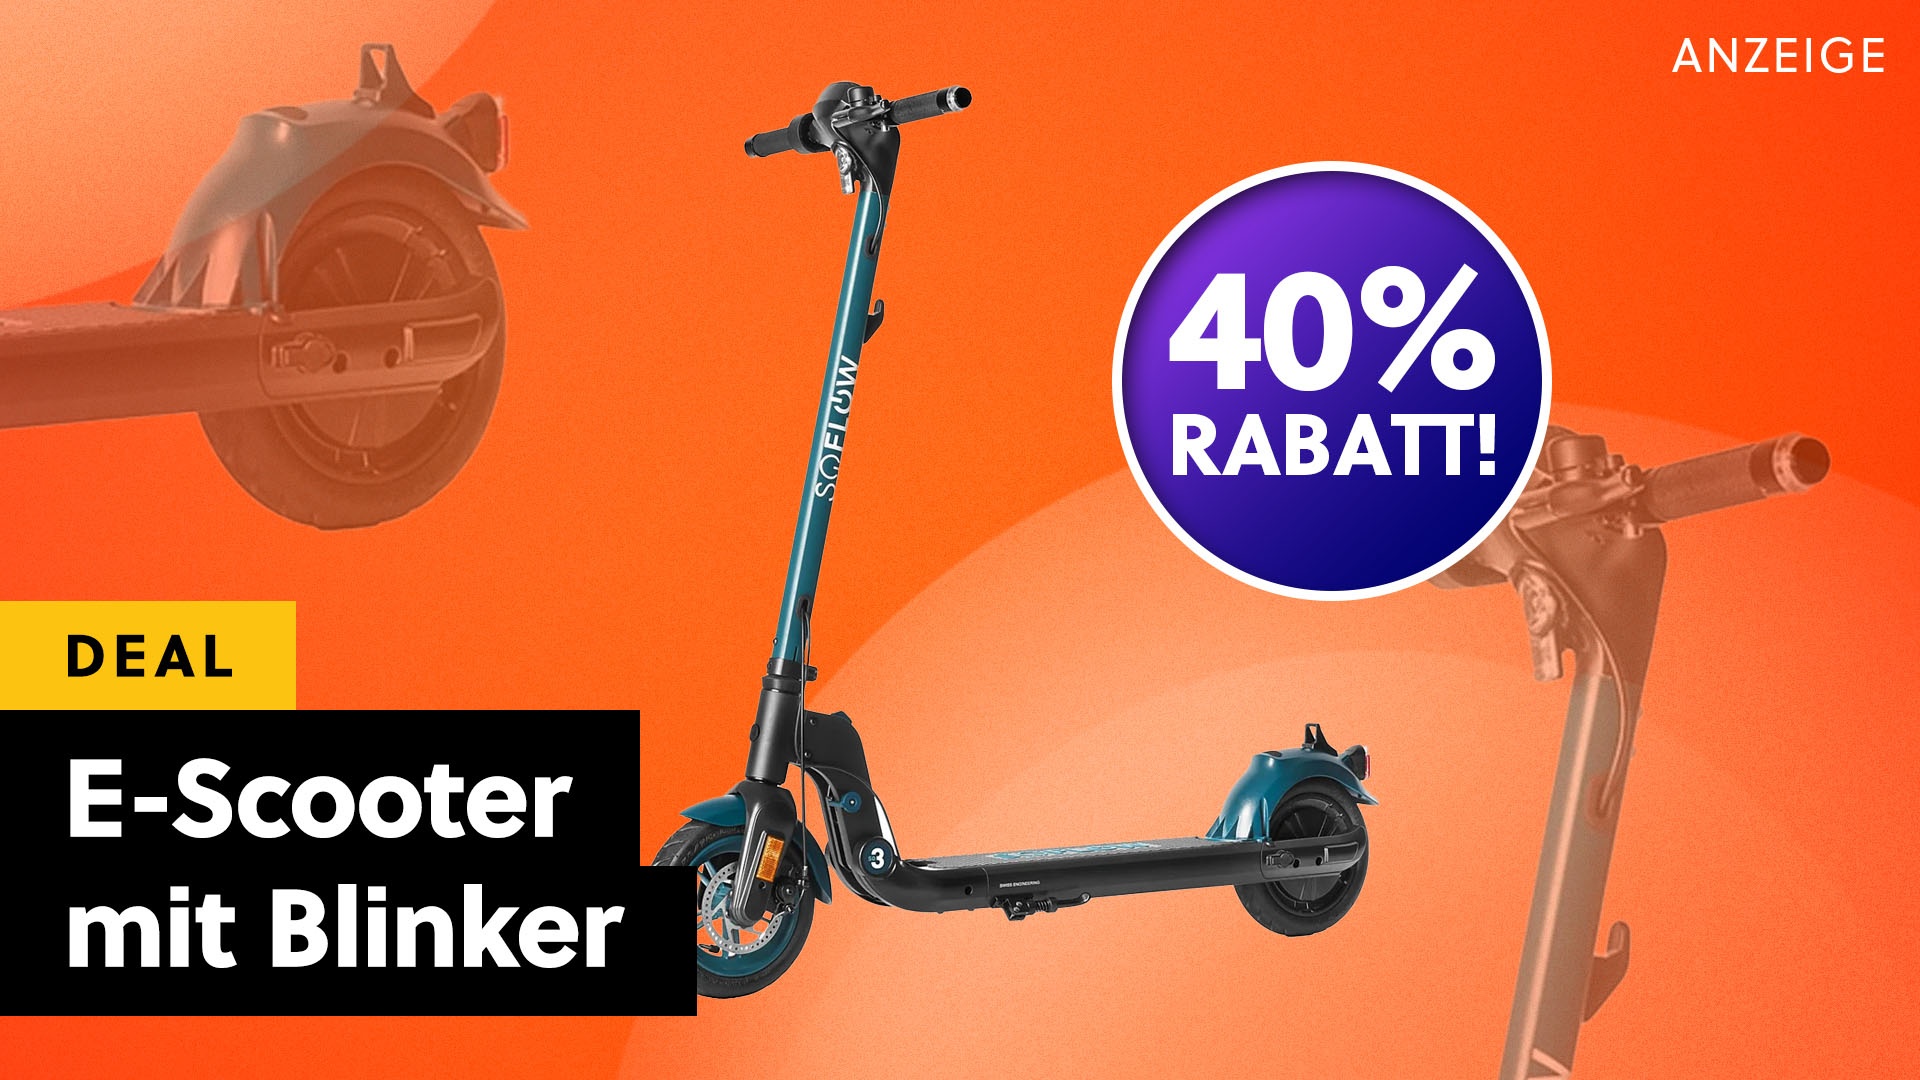 Ich wünschte, mein E-Scooter hätte diese Funktion: E-Scooter mit  Straßenzulassung und 40% Rabatt im Angebot